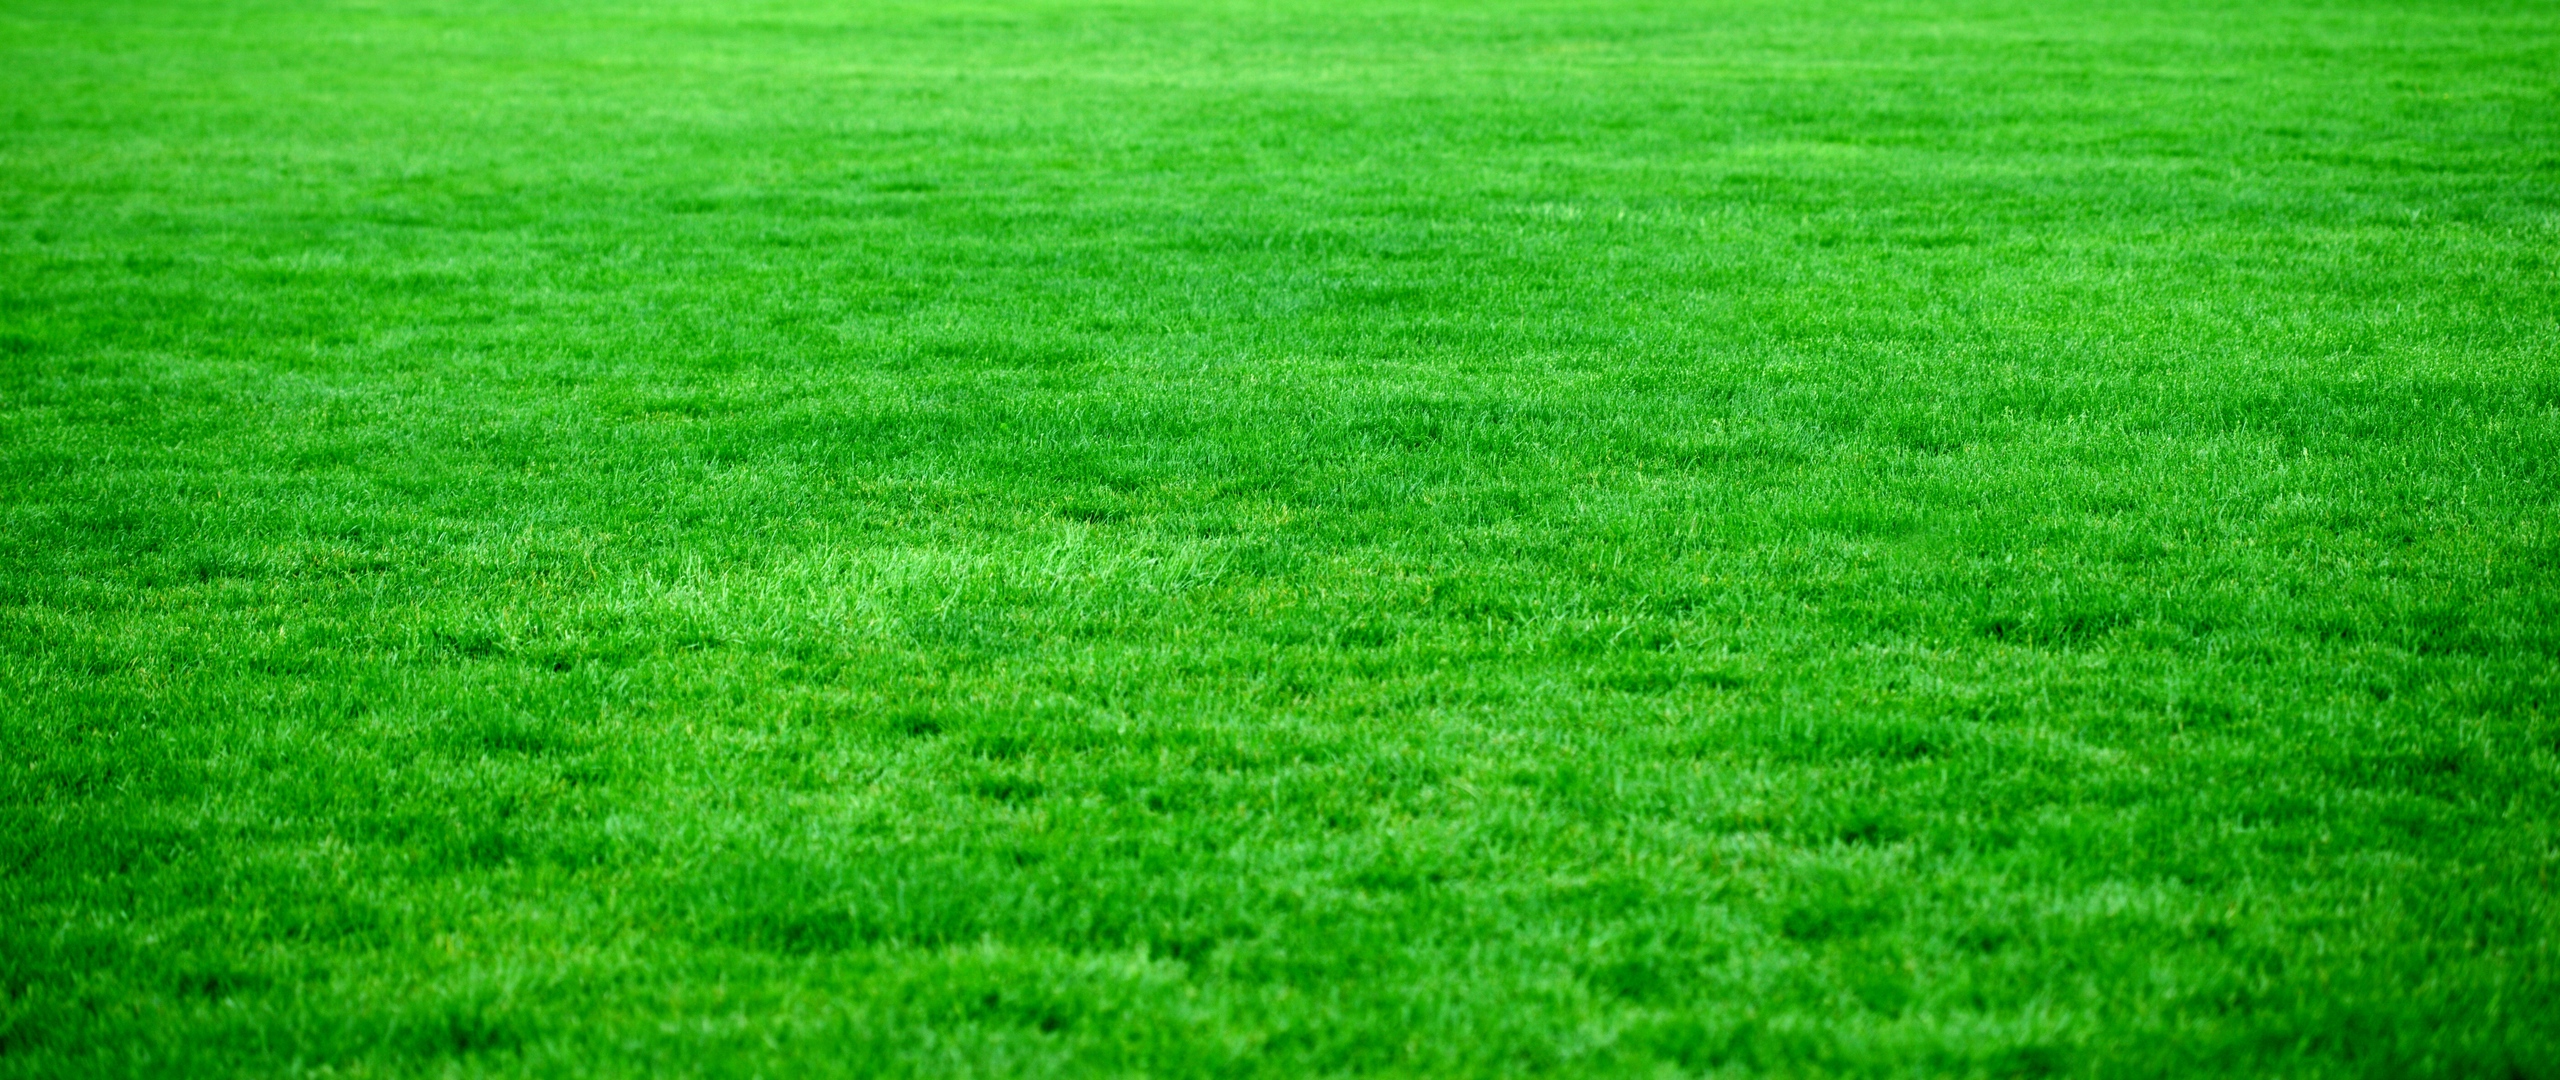 Wallpaper Grass, Lawn, Green, Bright - Green Grass Hd , HD Wallpaper & Backgrounds